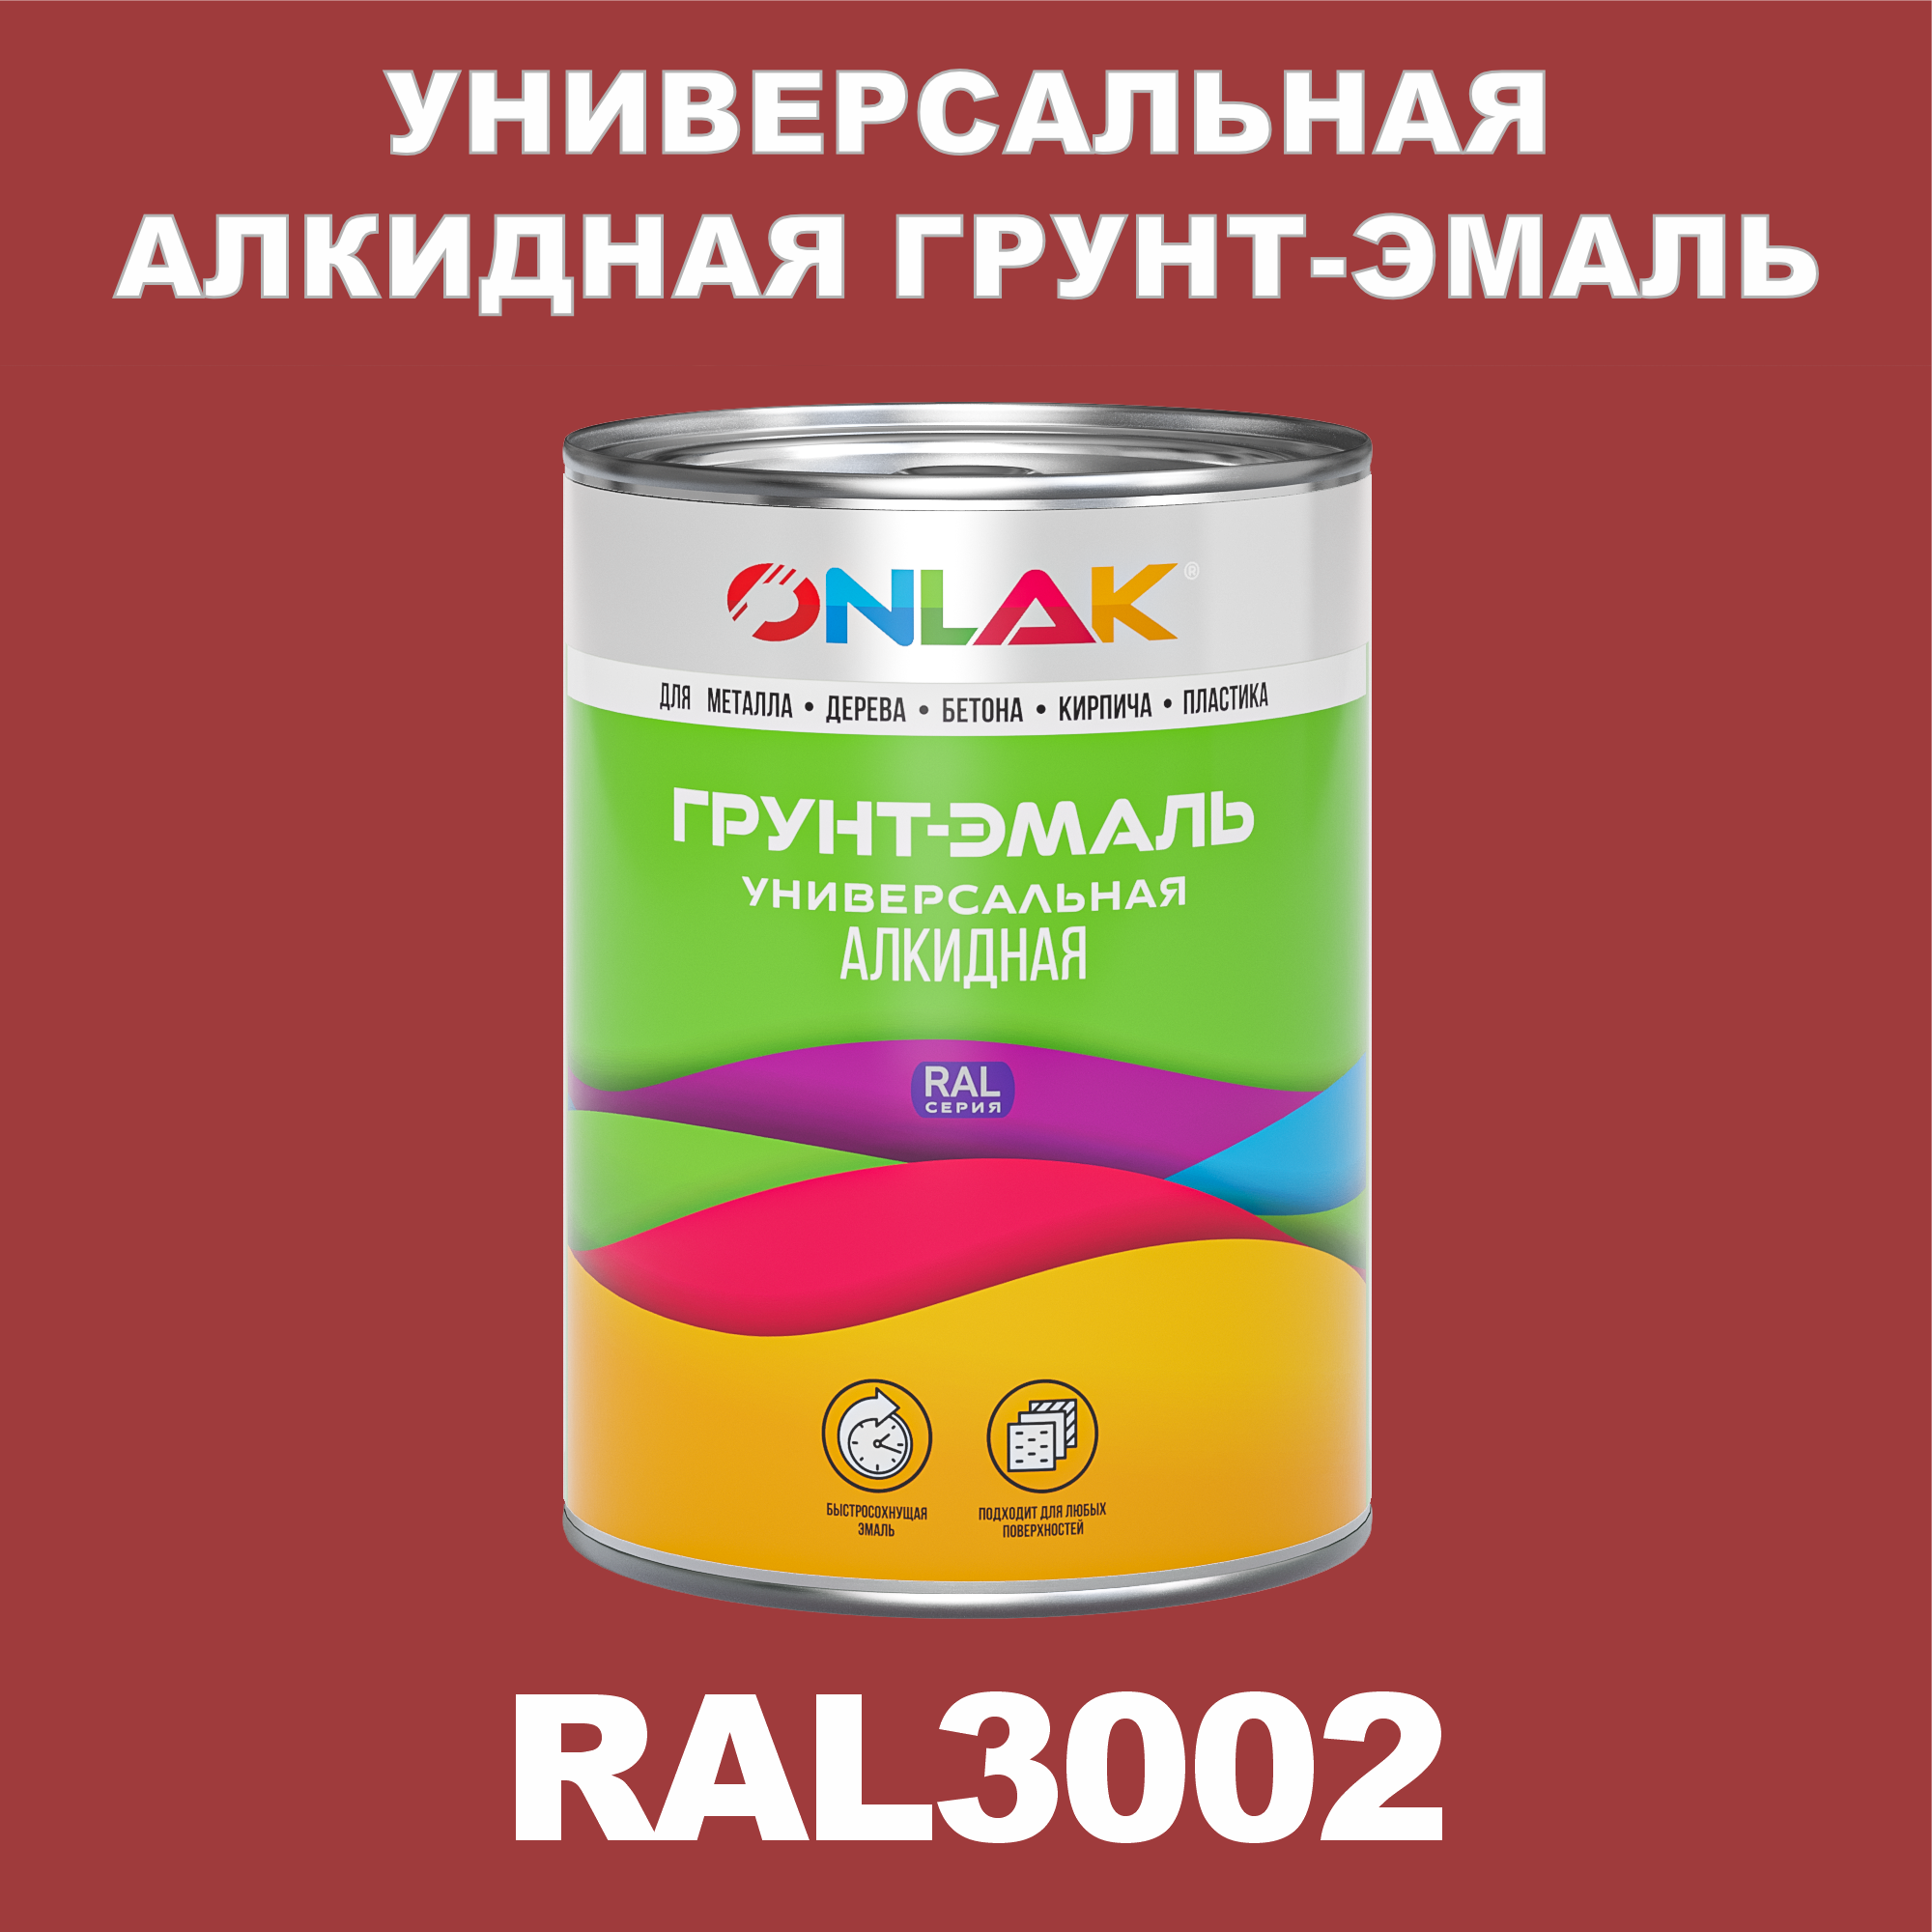 Грунт-эмаль ONLAK 1К RAL3002 антикоррозионная алкидная по металлу по ржавчине 1 кг грунт эмаль аэрозольная престиж 3в1 алкидная коричневая ral 8017 425 мл 0 425 кг